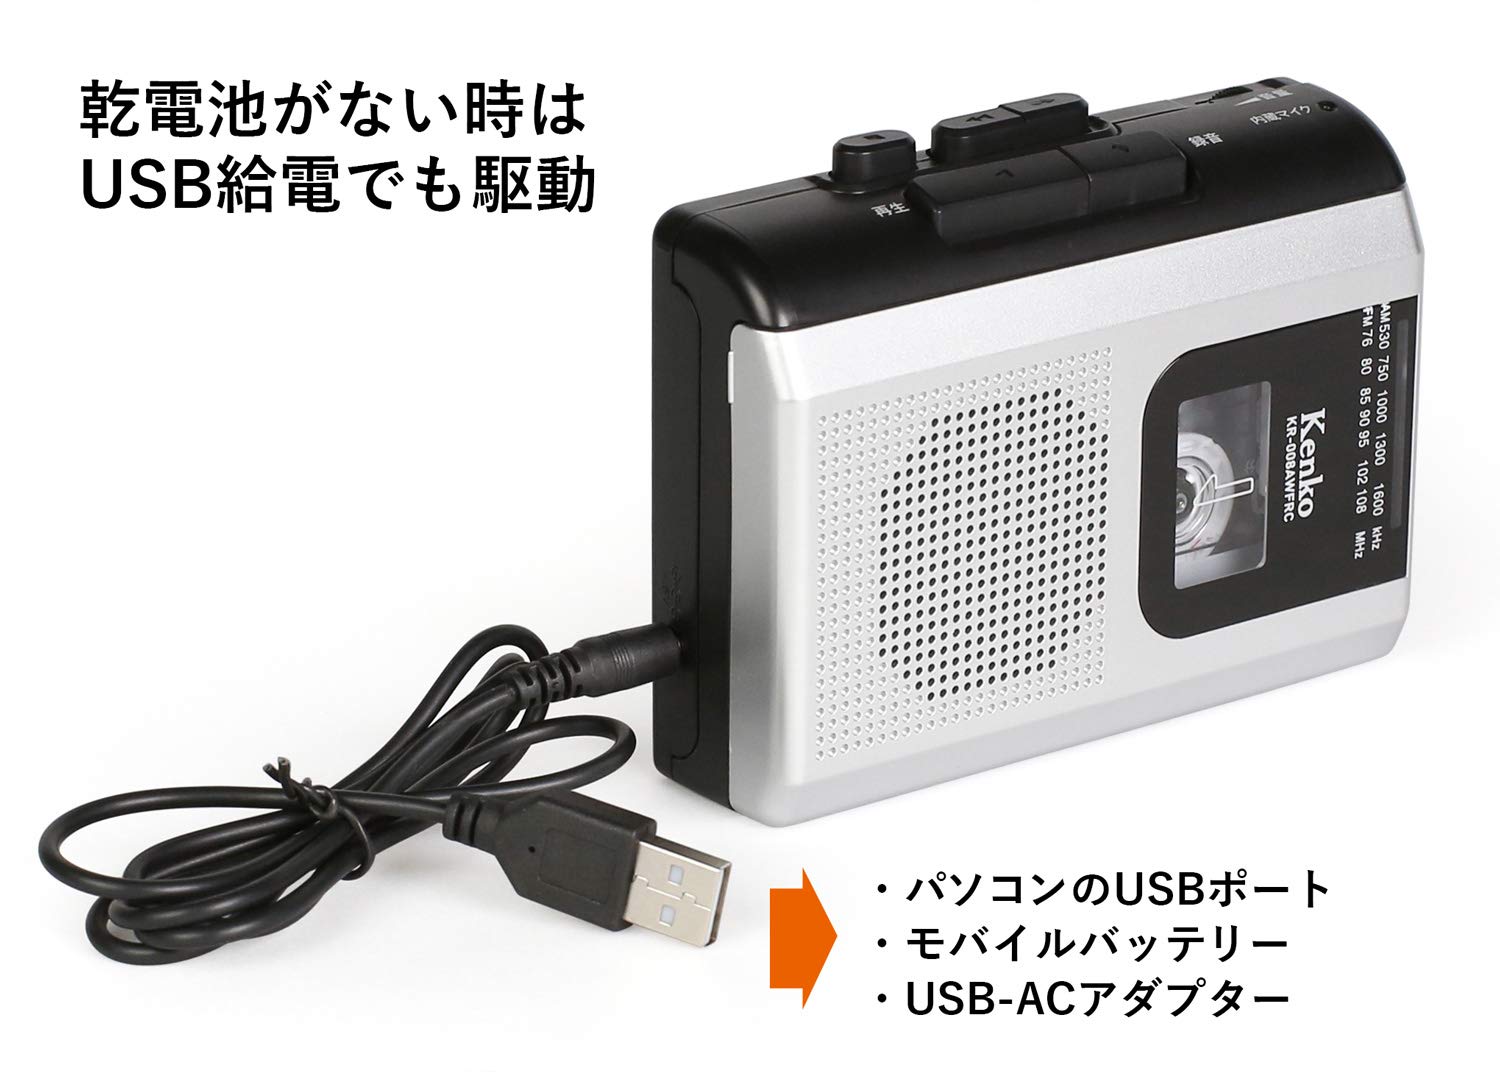 ケンコー・トキナー ケンコー AM／FM ラジオカセットレコーダー KR-008AWFRC(1台)  価格比較 - 商品価格ナビ